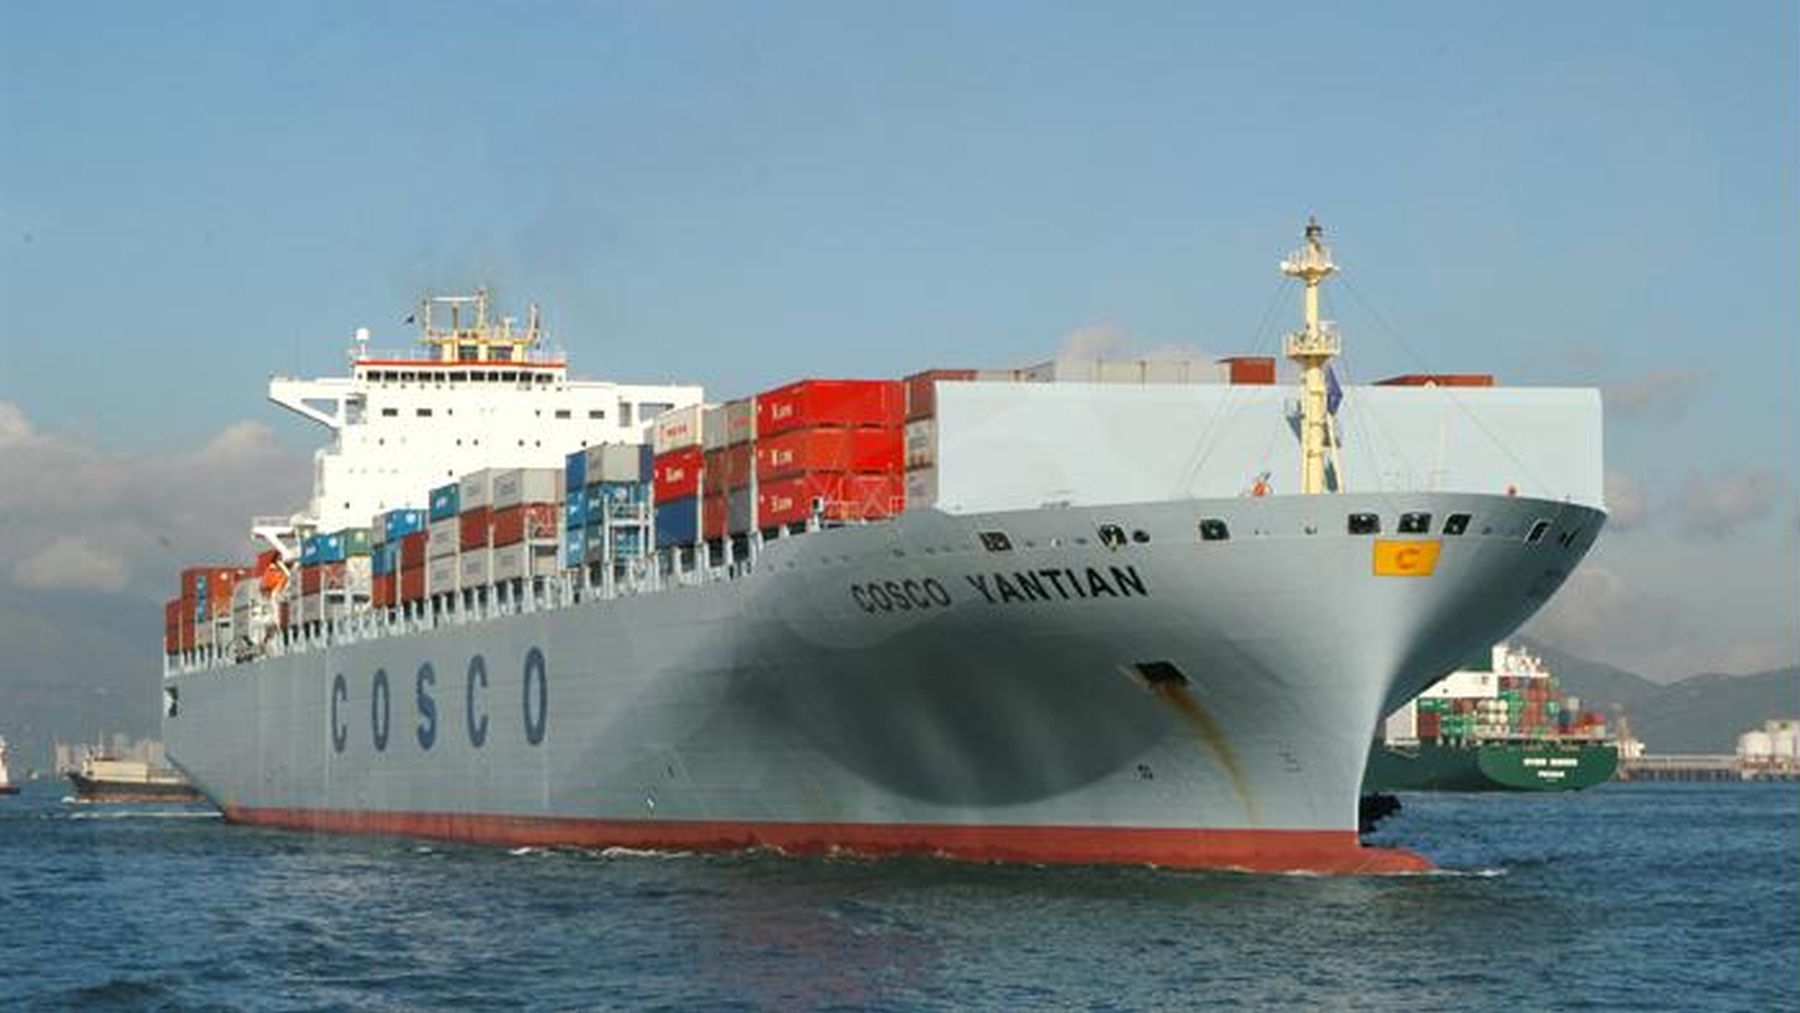 Najveći kineski brodar COSCO obilježava desetgodišnjicu poslovanja u Hrvatskoj